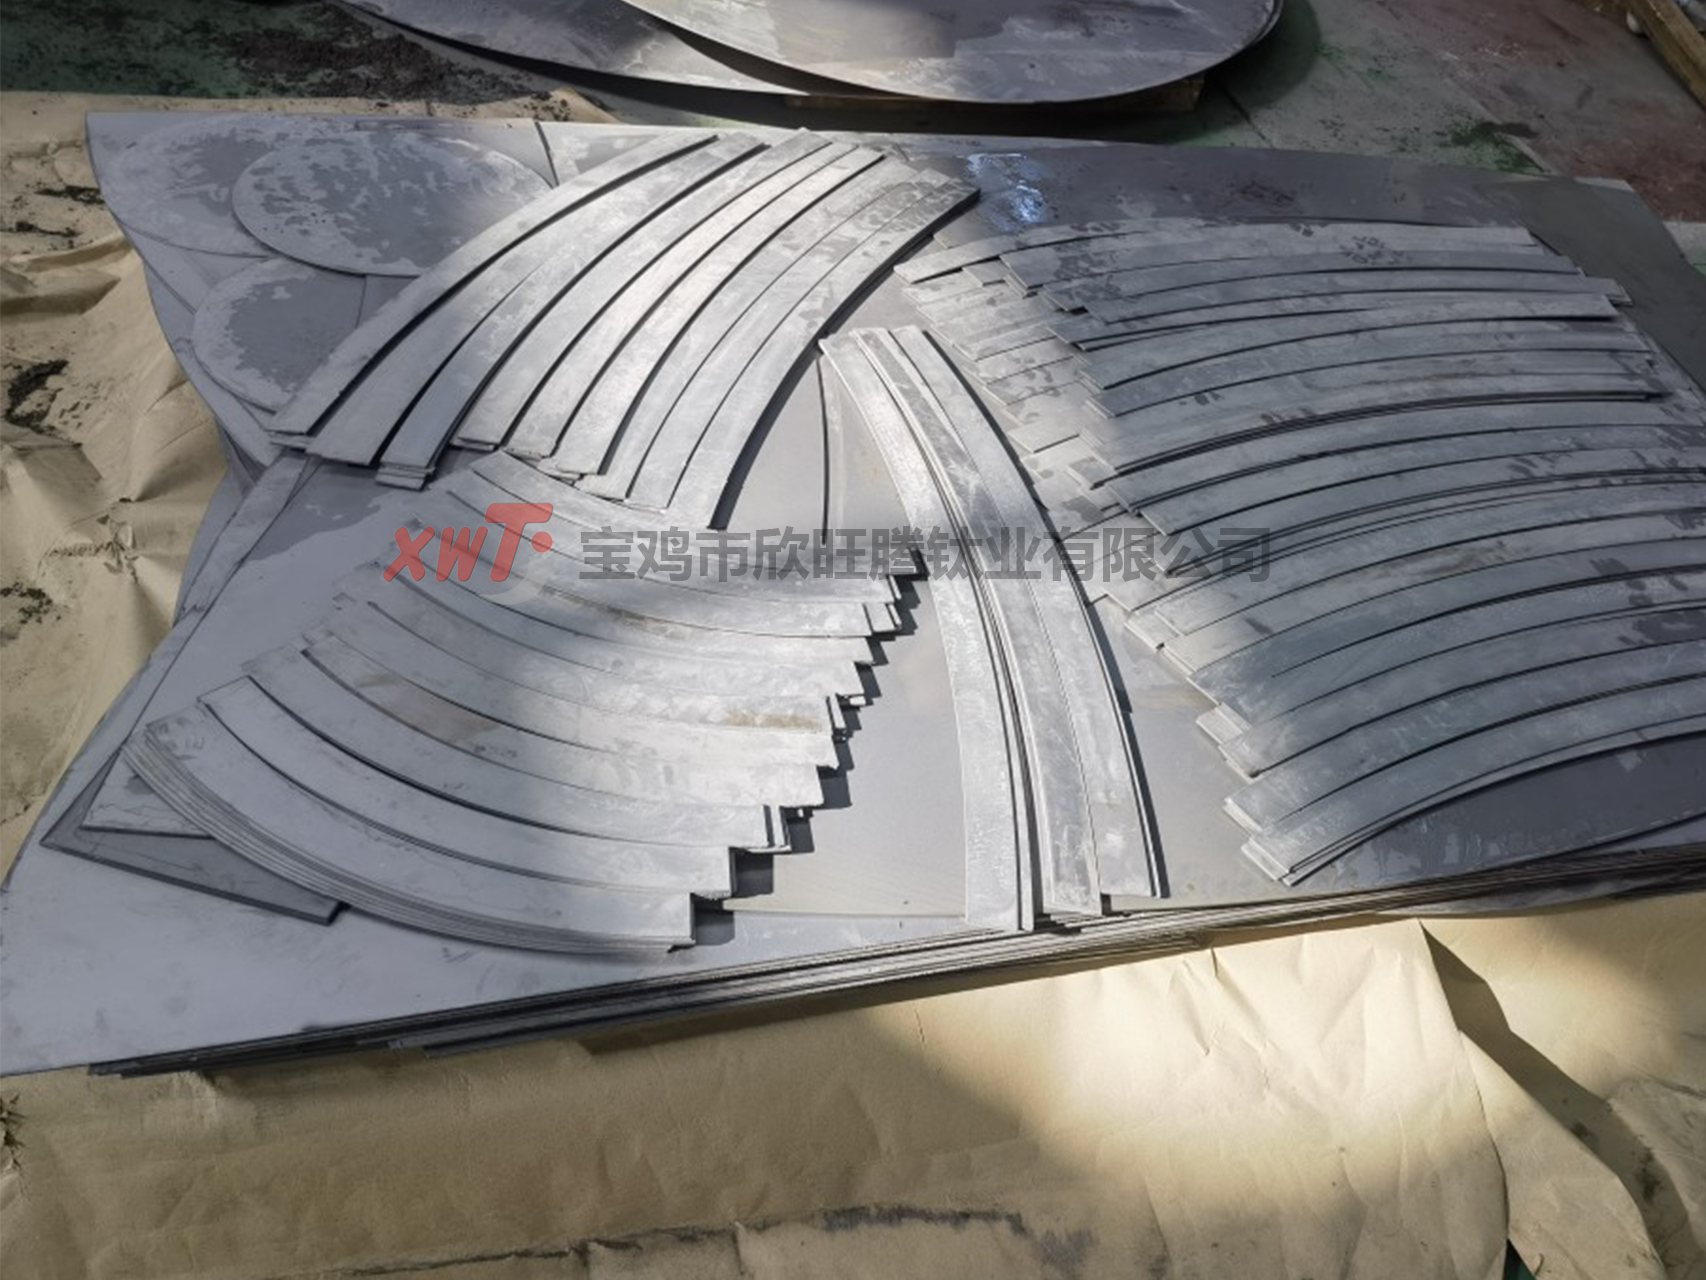 钛板制造工艺及行业应用